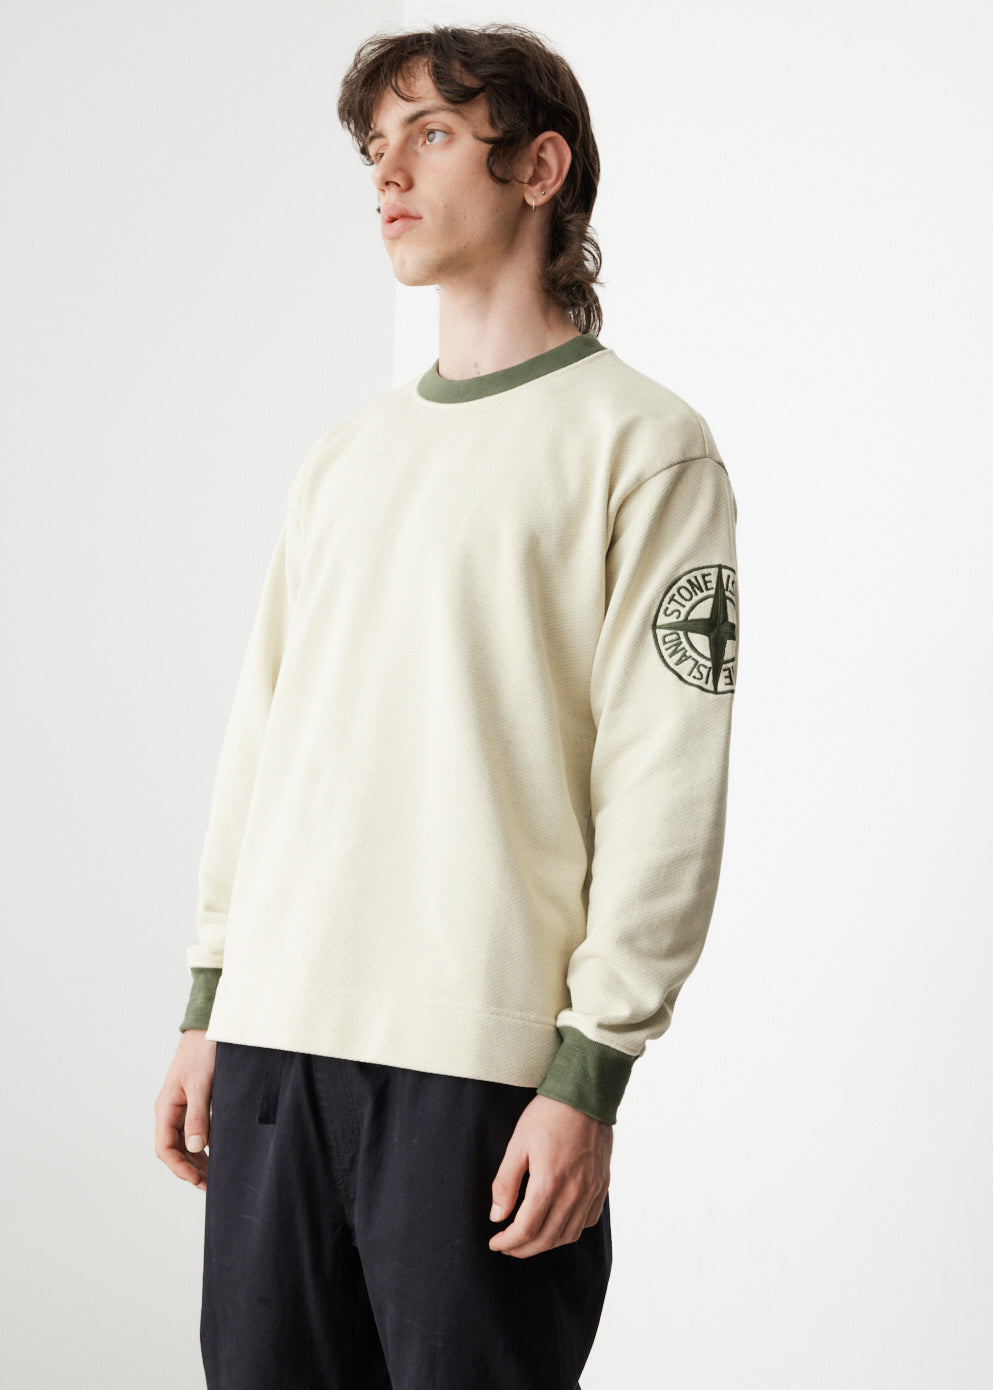 Two-Tone Sweatshirt